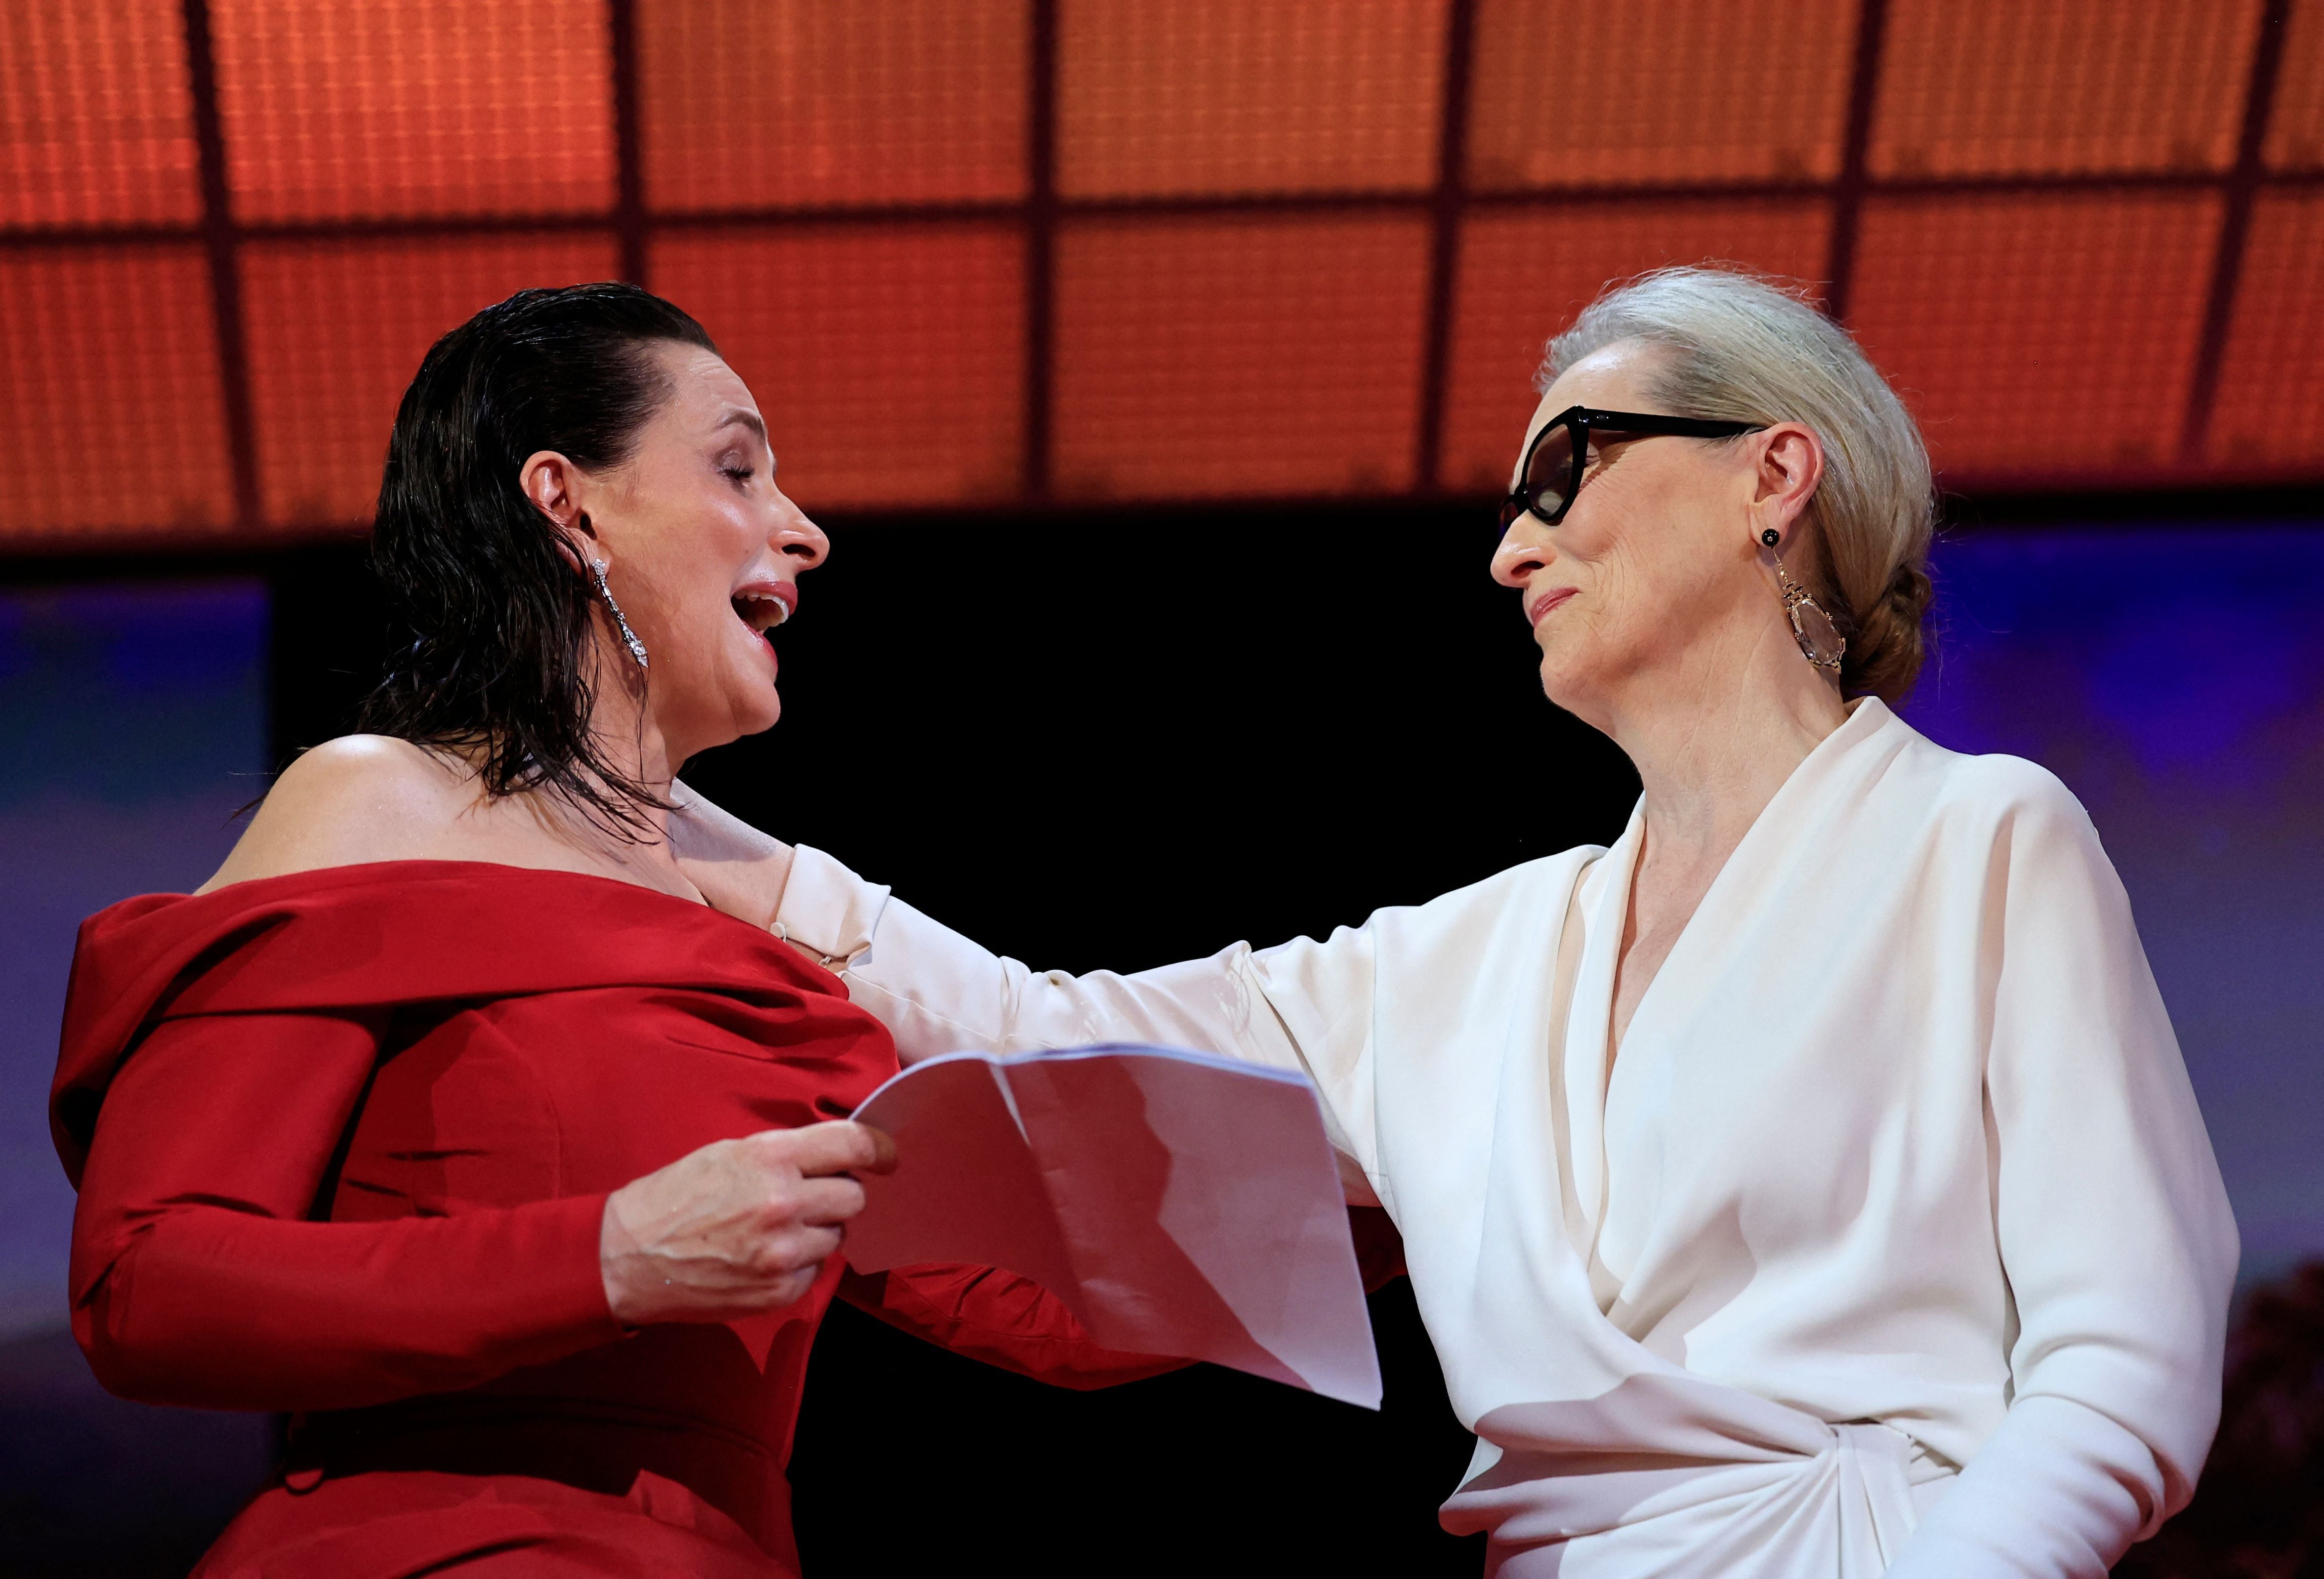 Juliette Binoche no ocultó su admiración por Meryl Streep al entregarle la Palma de Oro honorífica. Foto: AFP